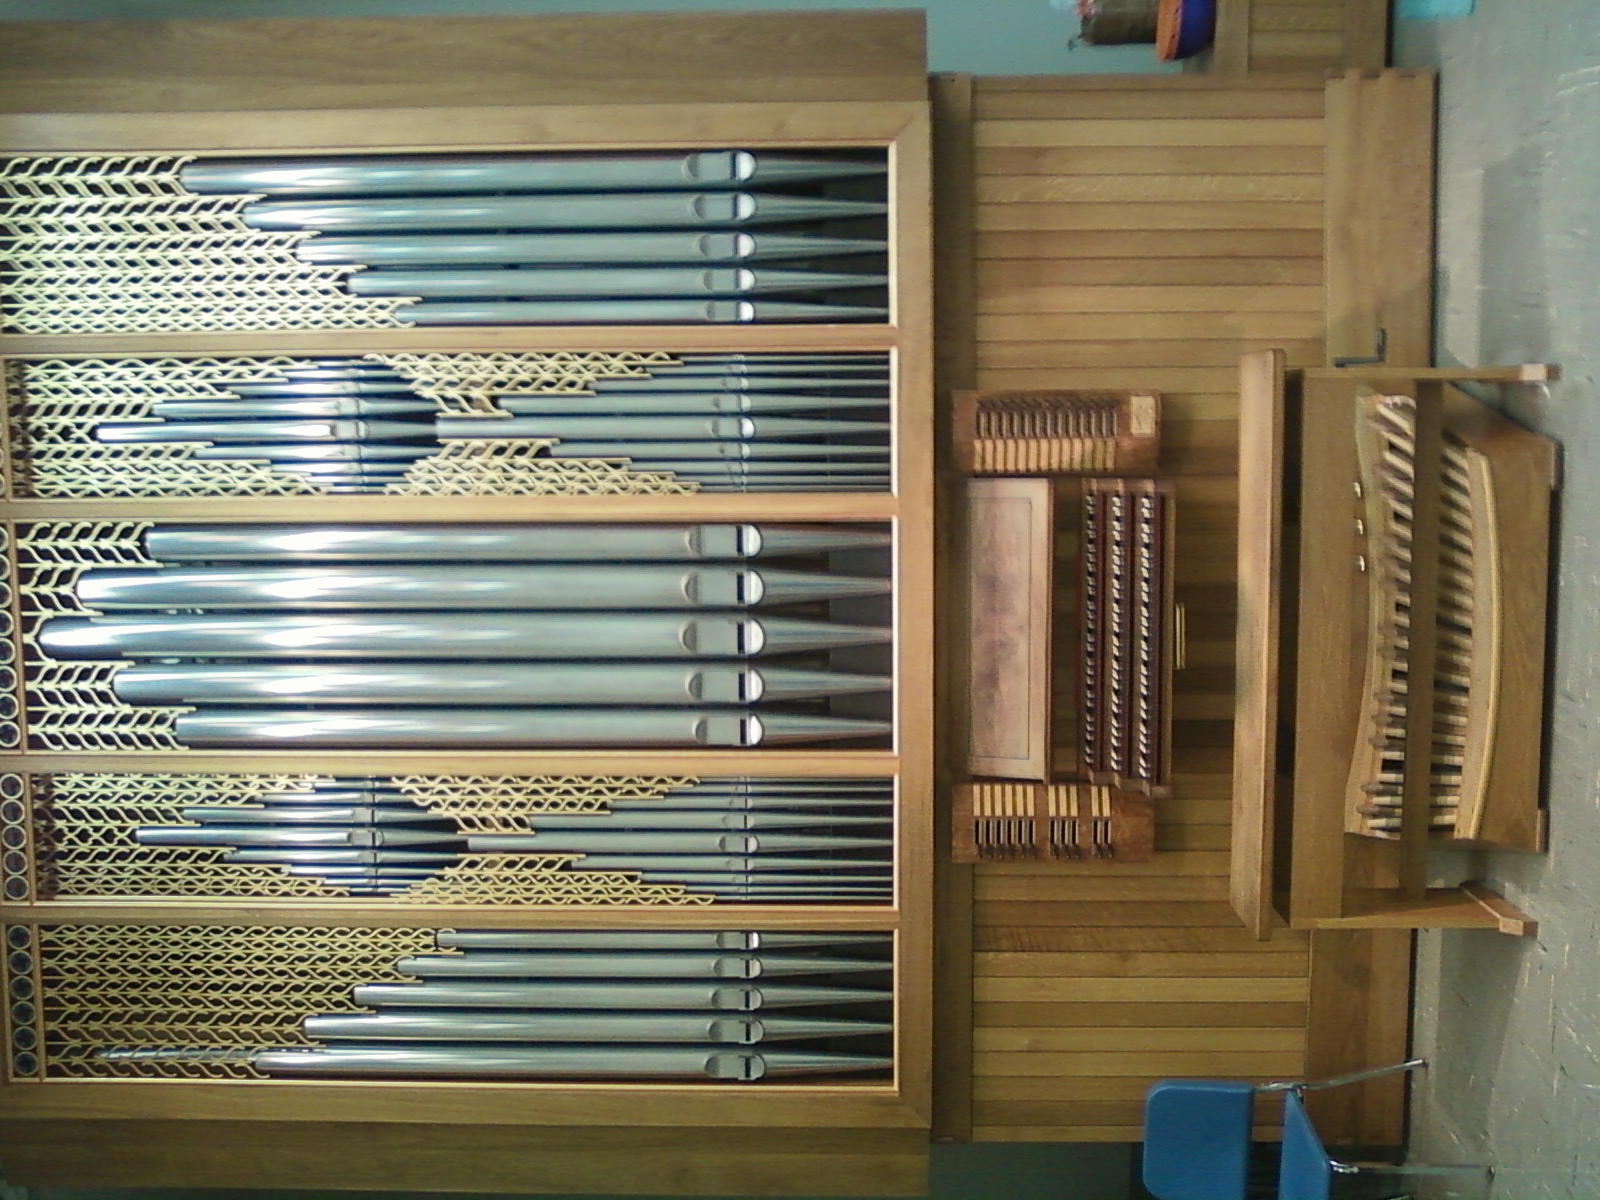 Dobson organ with a keydesk